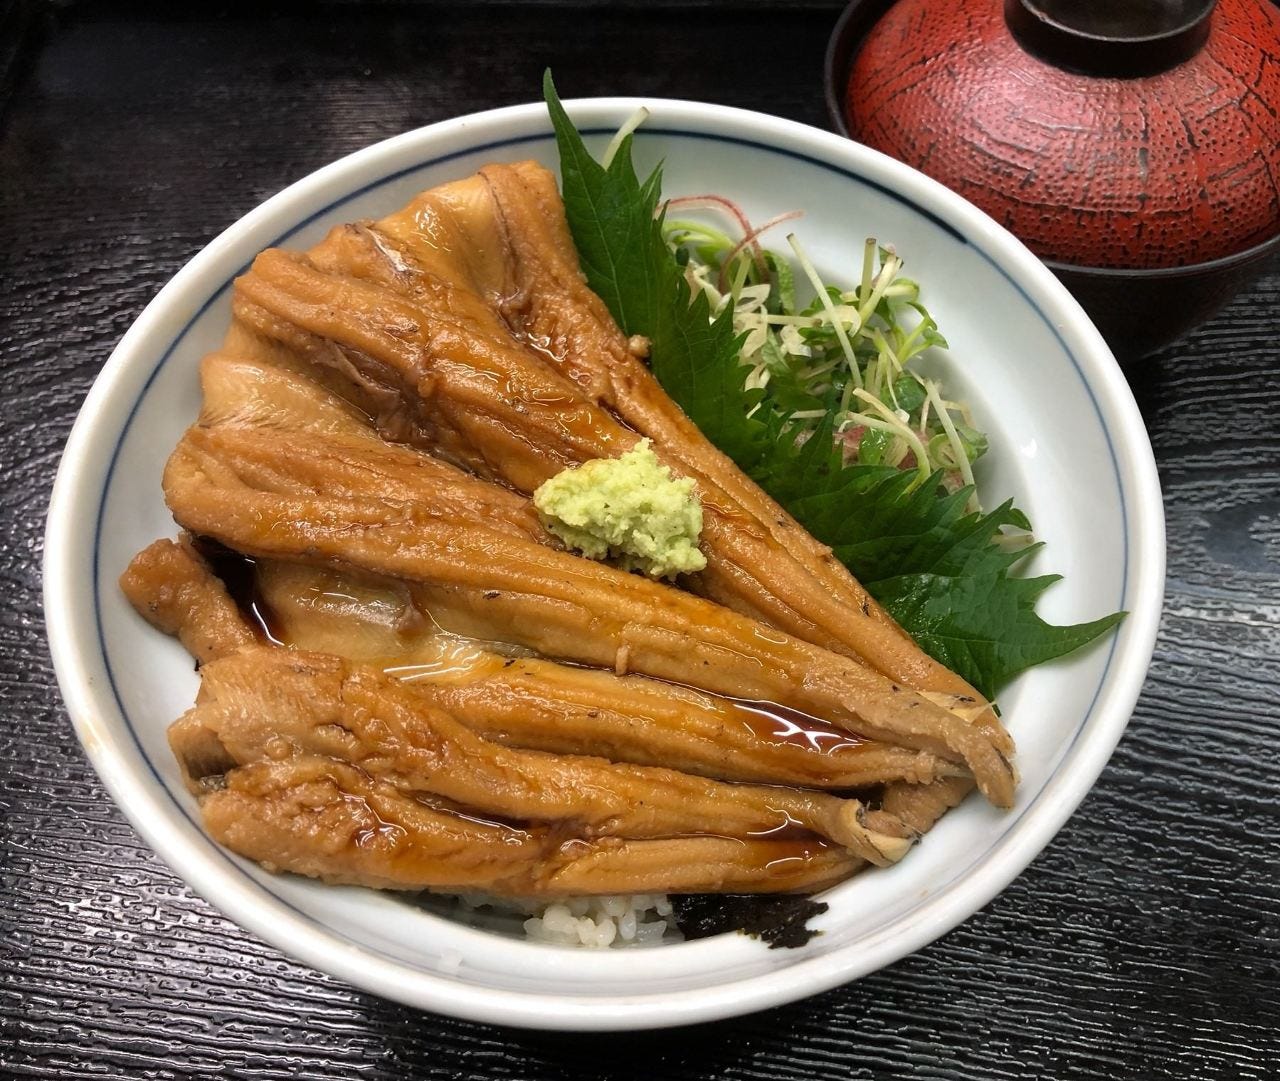 煮穴子丼　1850円(税別)
季節メニュー、女性に人気です。